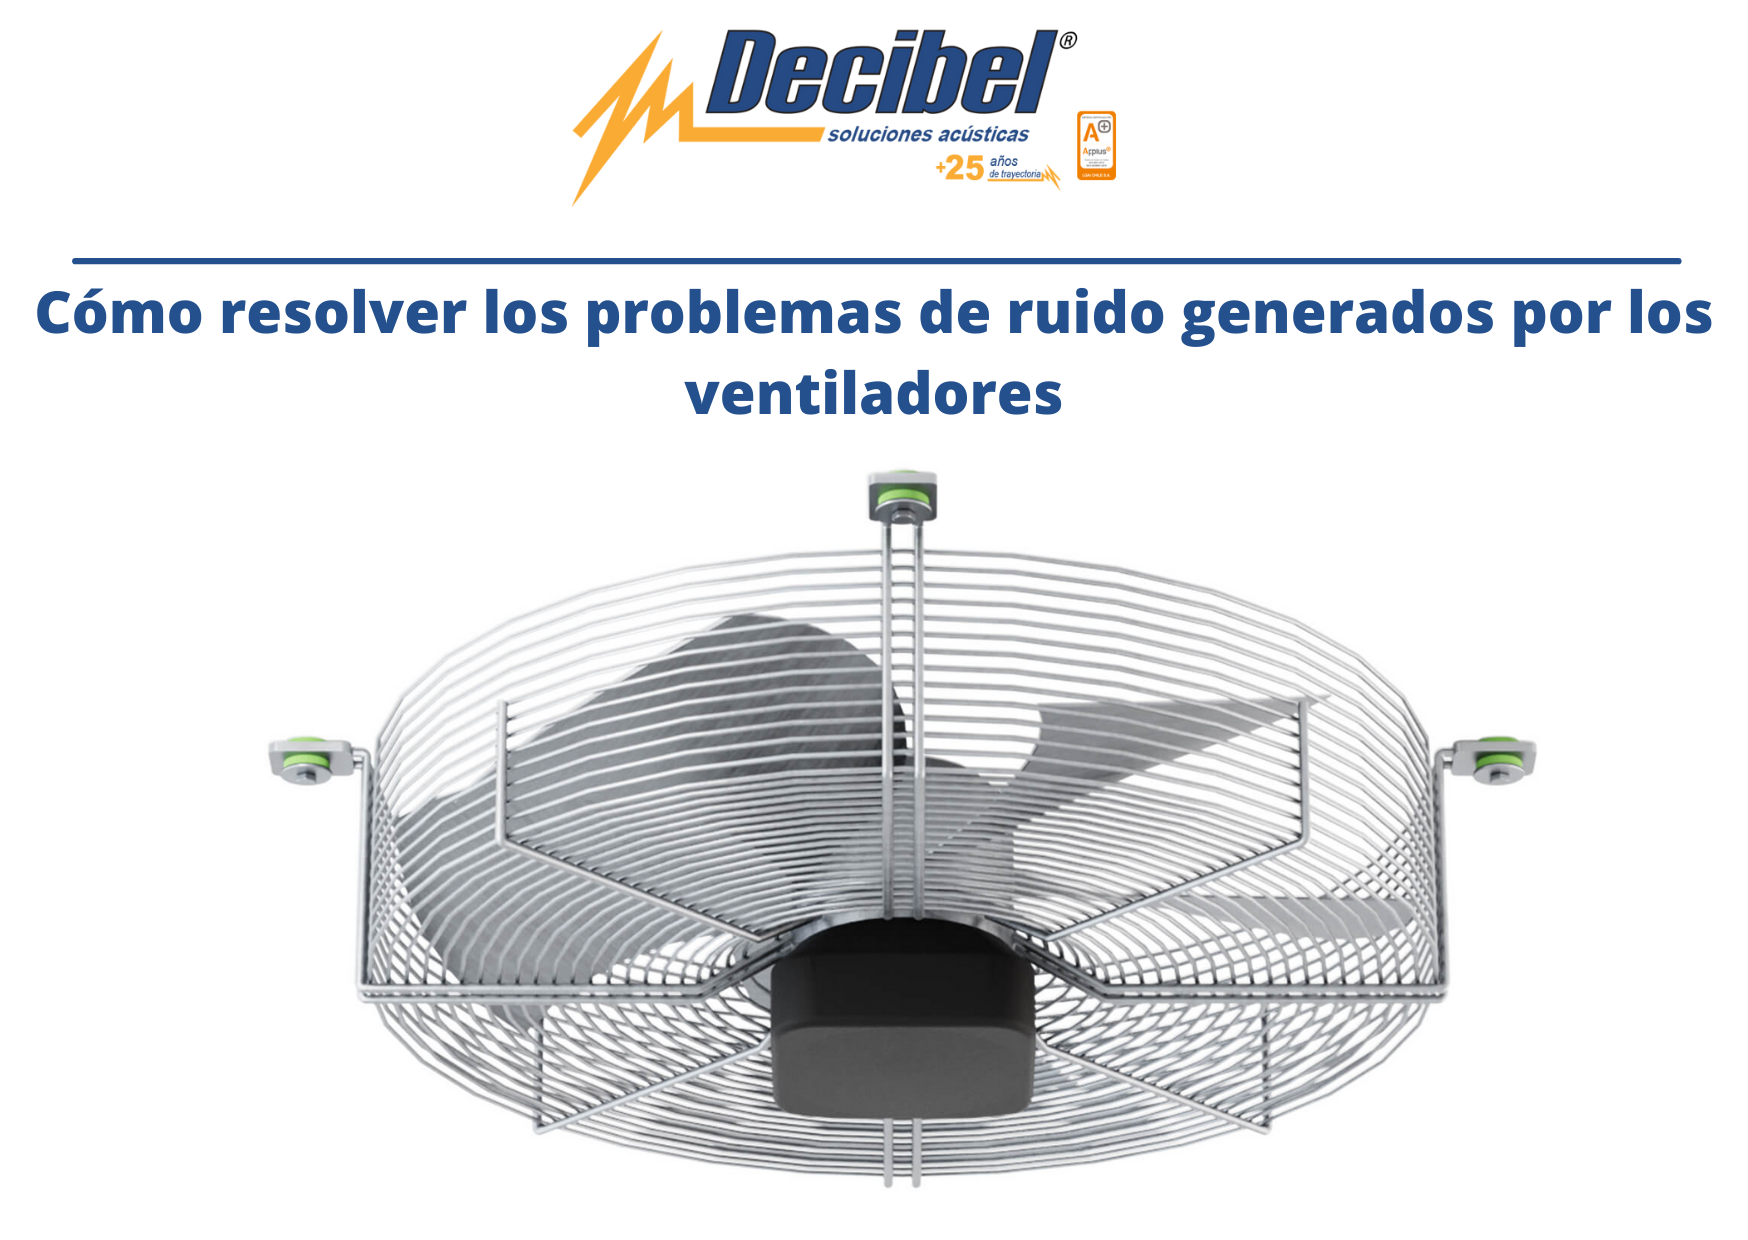 ¿Cómo resolver los problemas de ruido generados por los ventiladores?